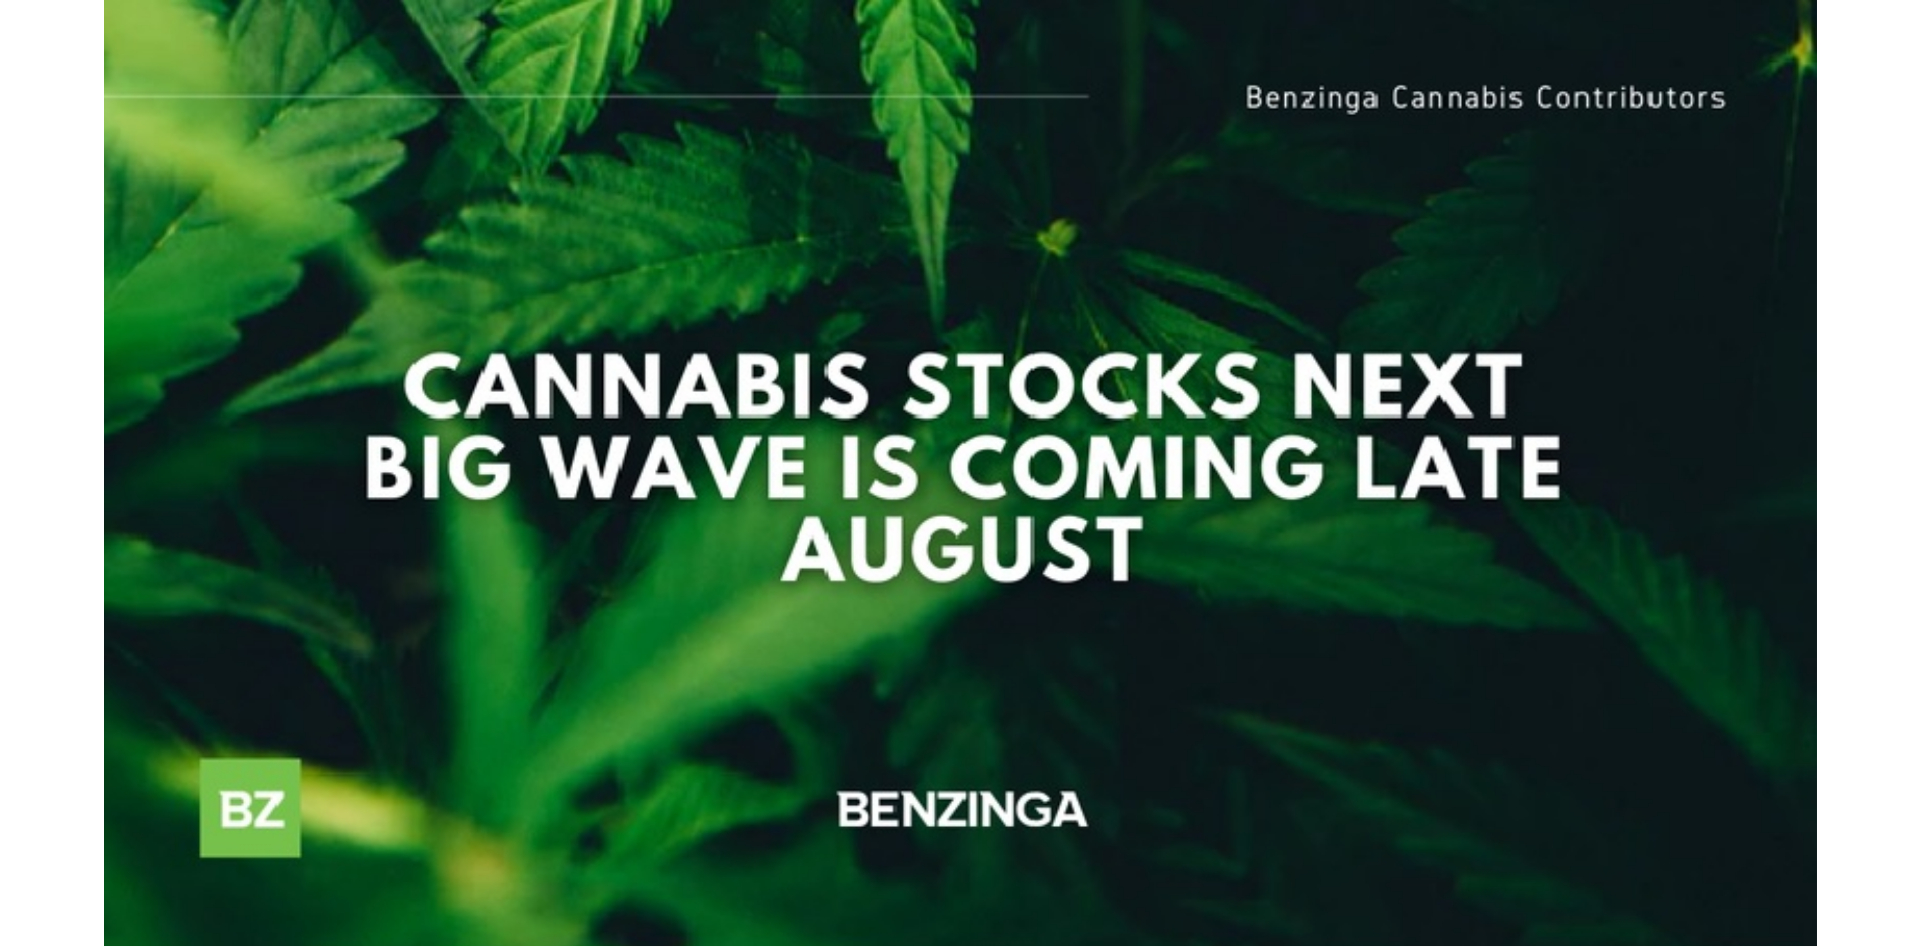 Die nächste große Welle der Cannabis-Aktien kommt Ende August